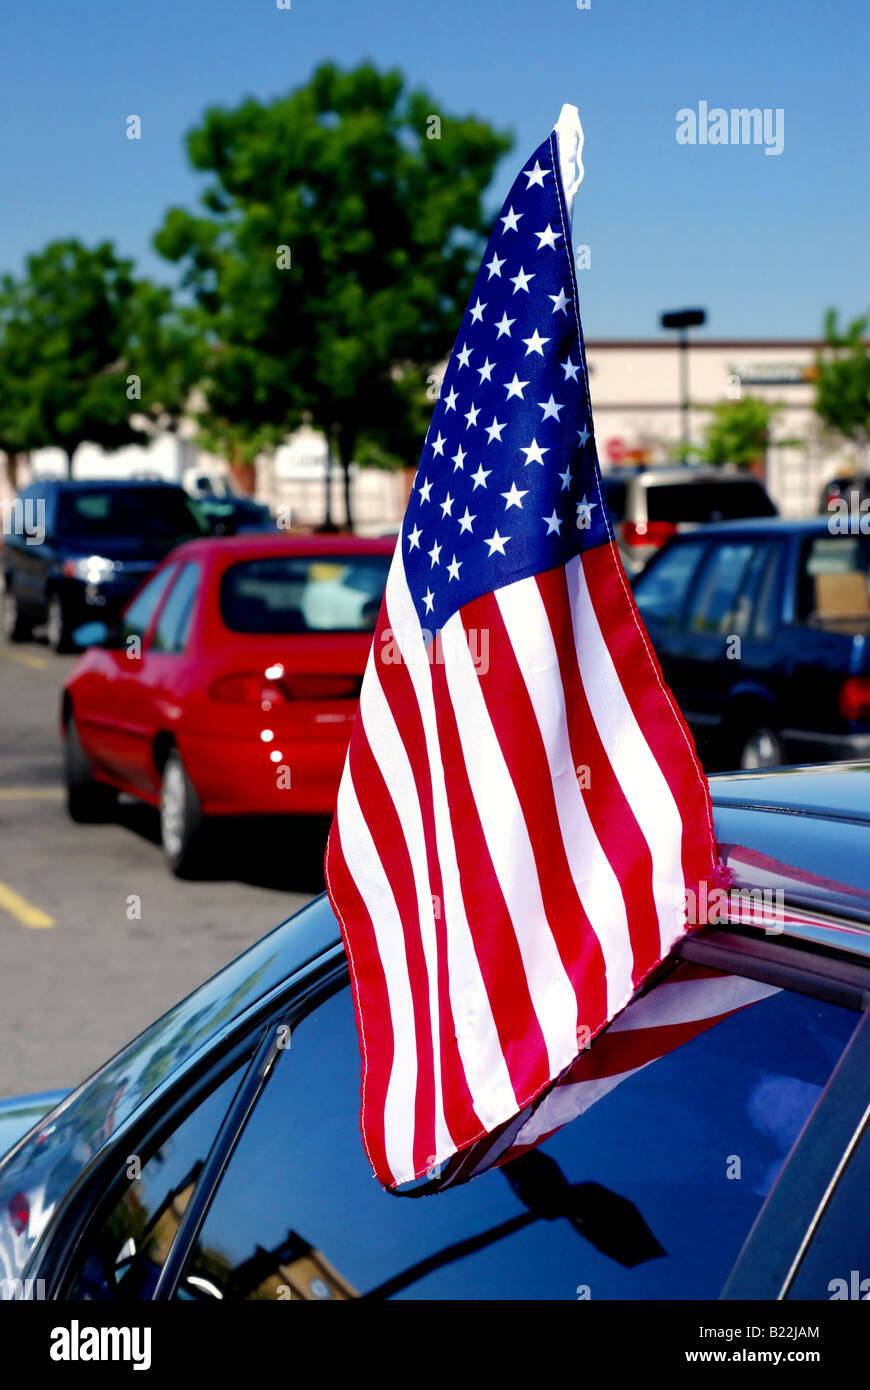 https://c8.alamy.com/compde/b22jam/eine-amerikanische-flagge-die-in-einem-autofenster-eingefugt-b22jam.jpg